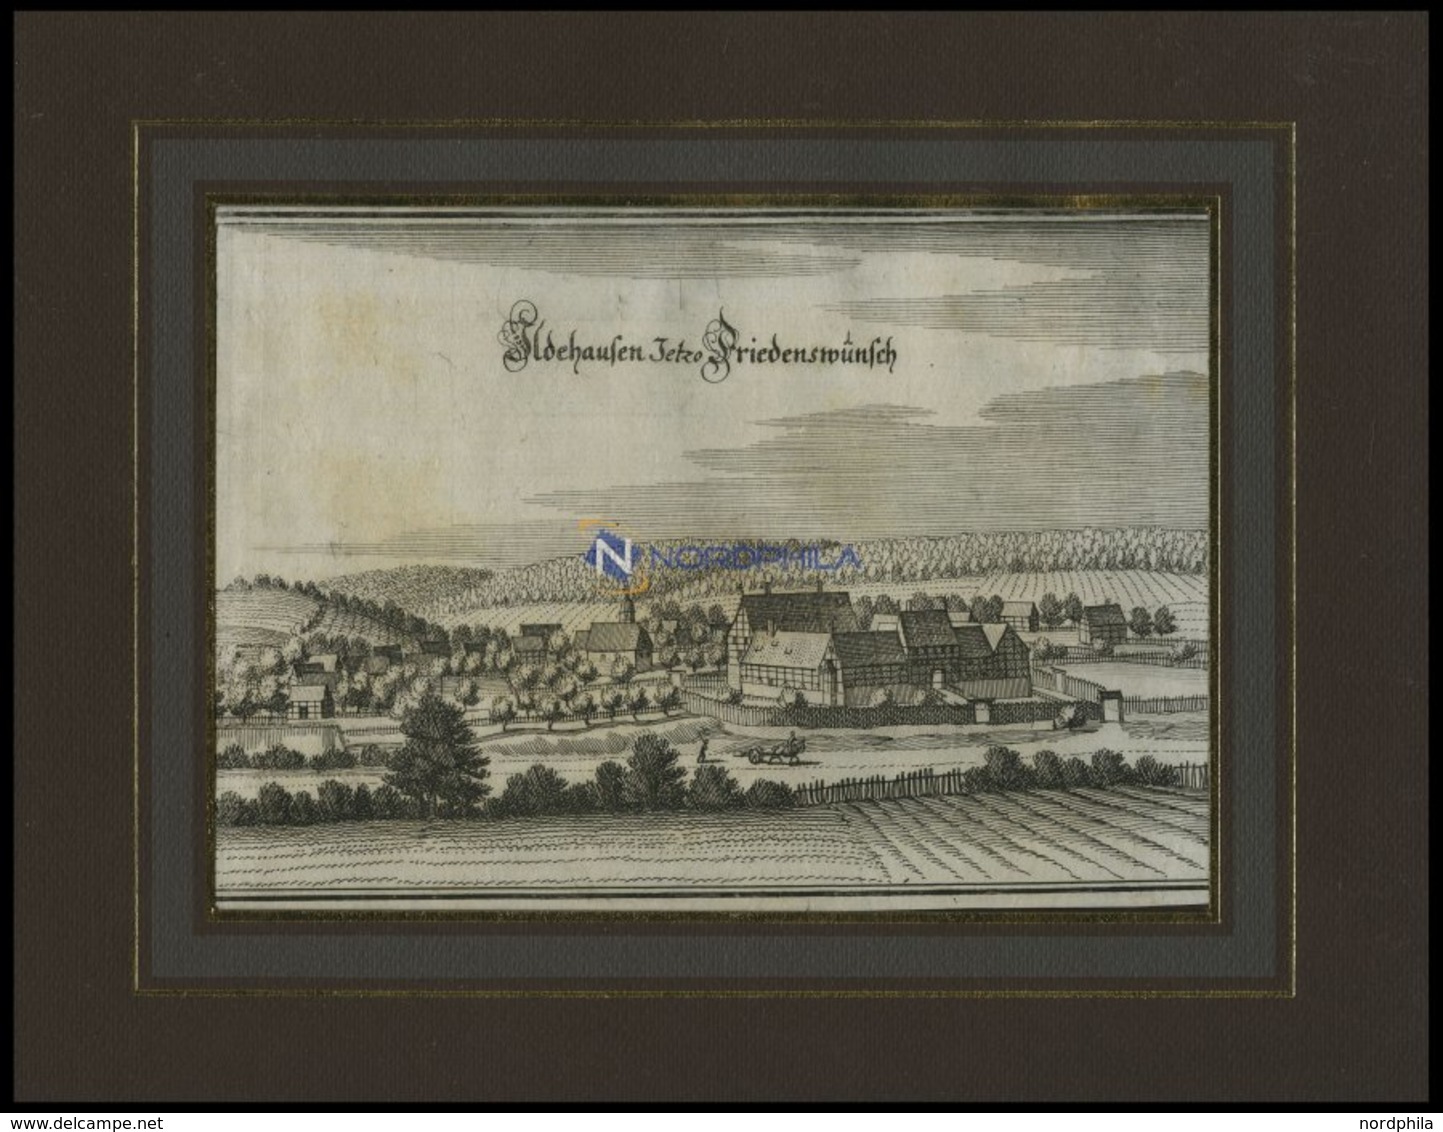 ILDEHAUSEN, Gesamtansicht, Kupferstich Von Merian Um 1645 - Lithographies